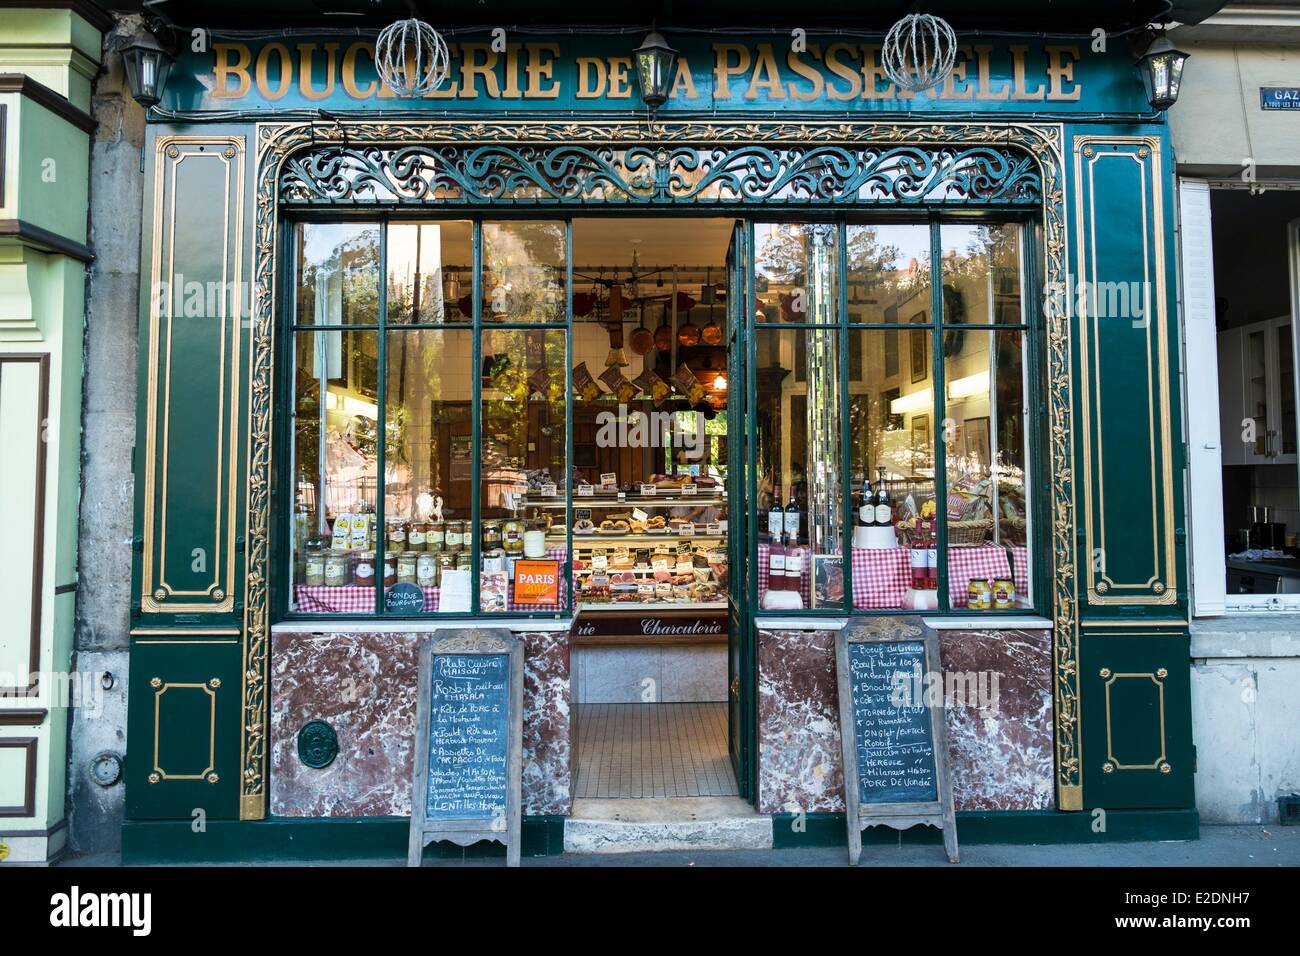 File:Champs-Élysées Shops in Paris, France.JPG - Wikimedia Commons